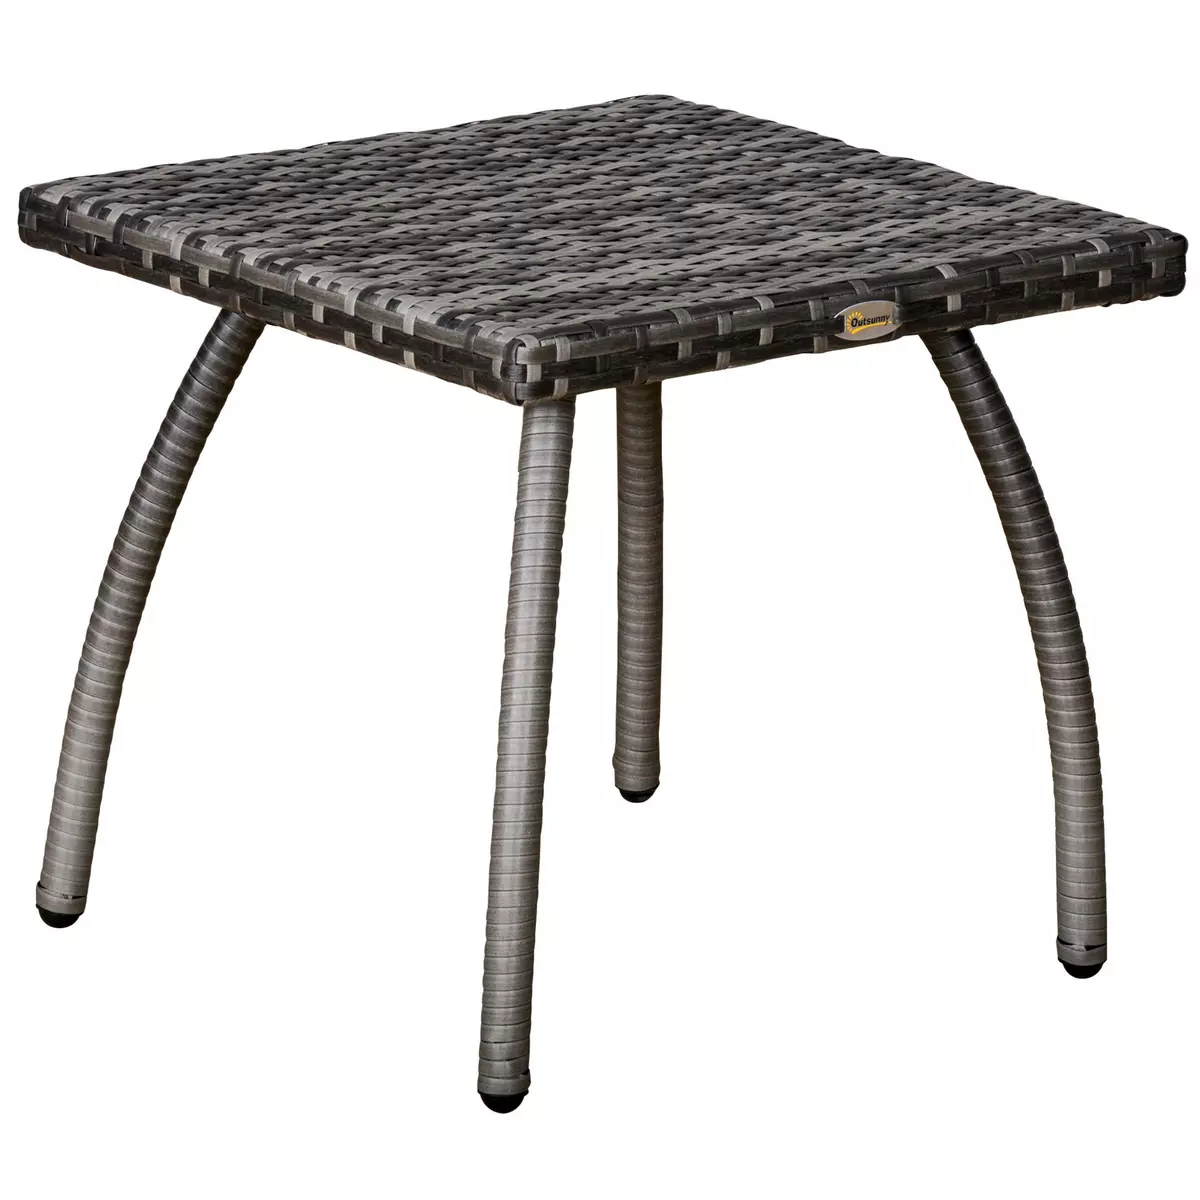 OUTSUNNY Table basse de jardin style cosy chic table d'appoint métal époxy résine tressée imitation rotin gris